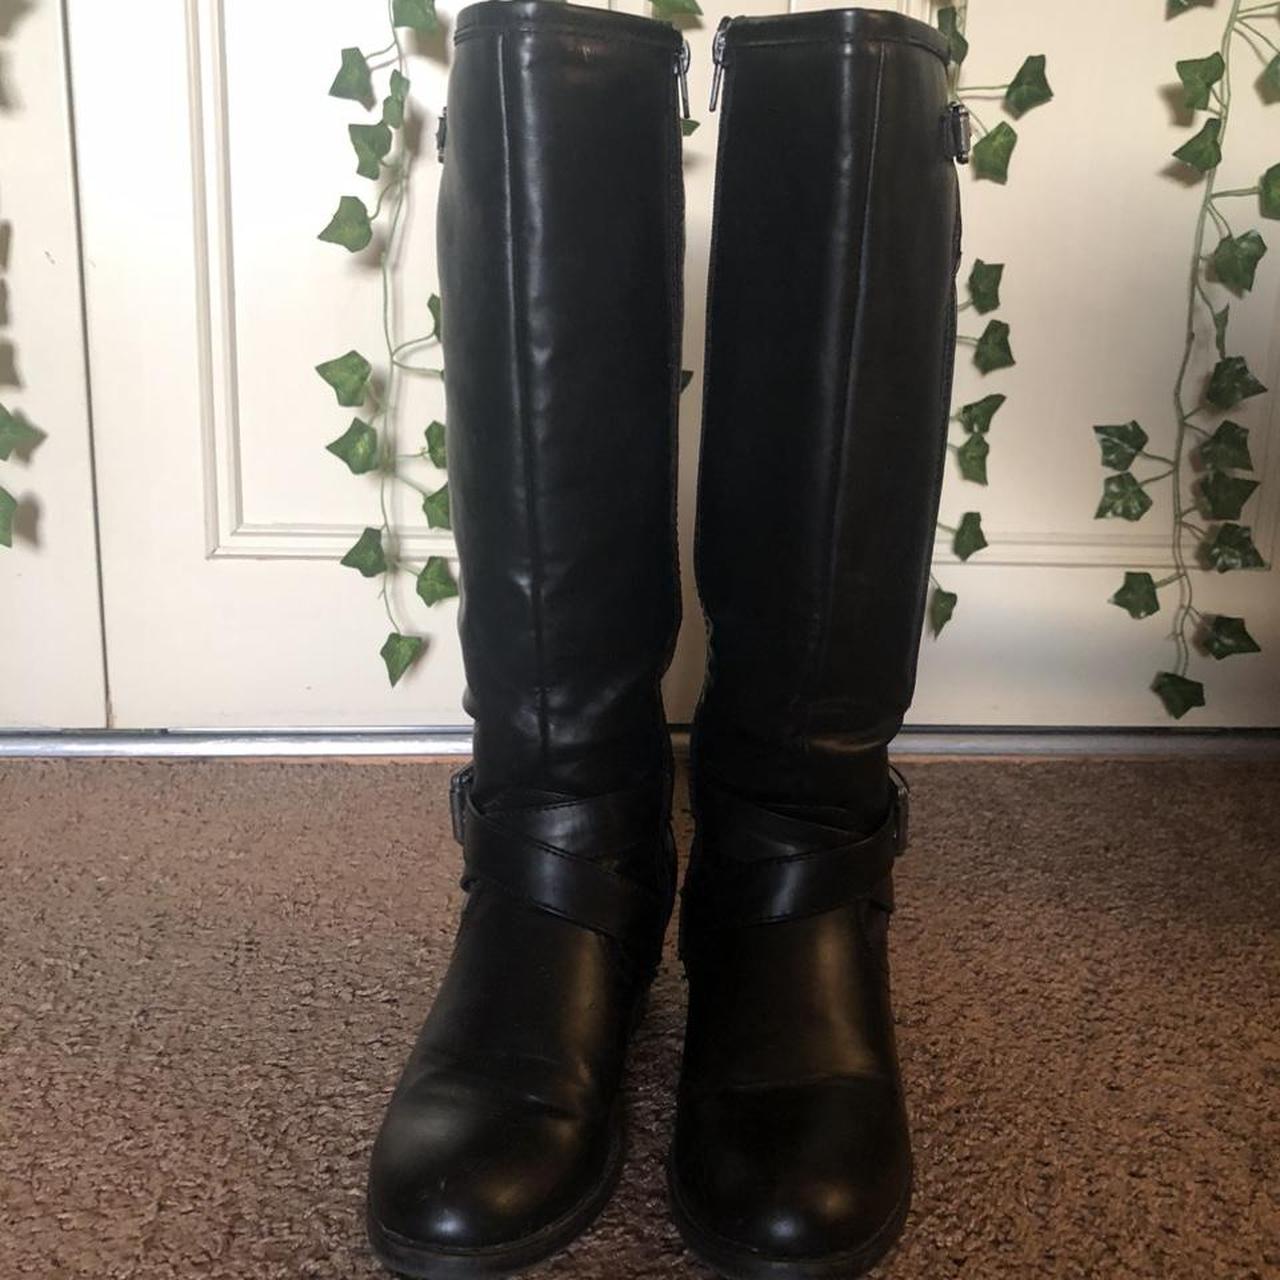 Kohl's Women's Black Boots | Depop